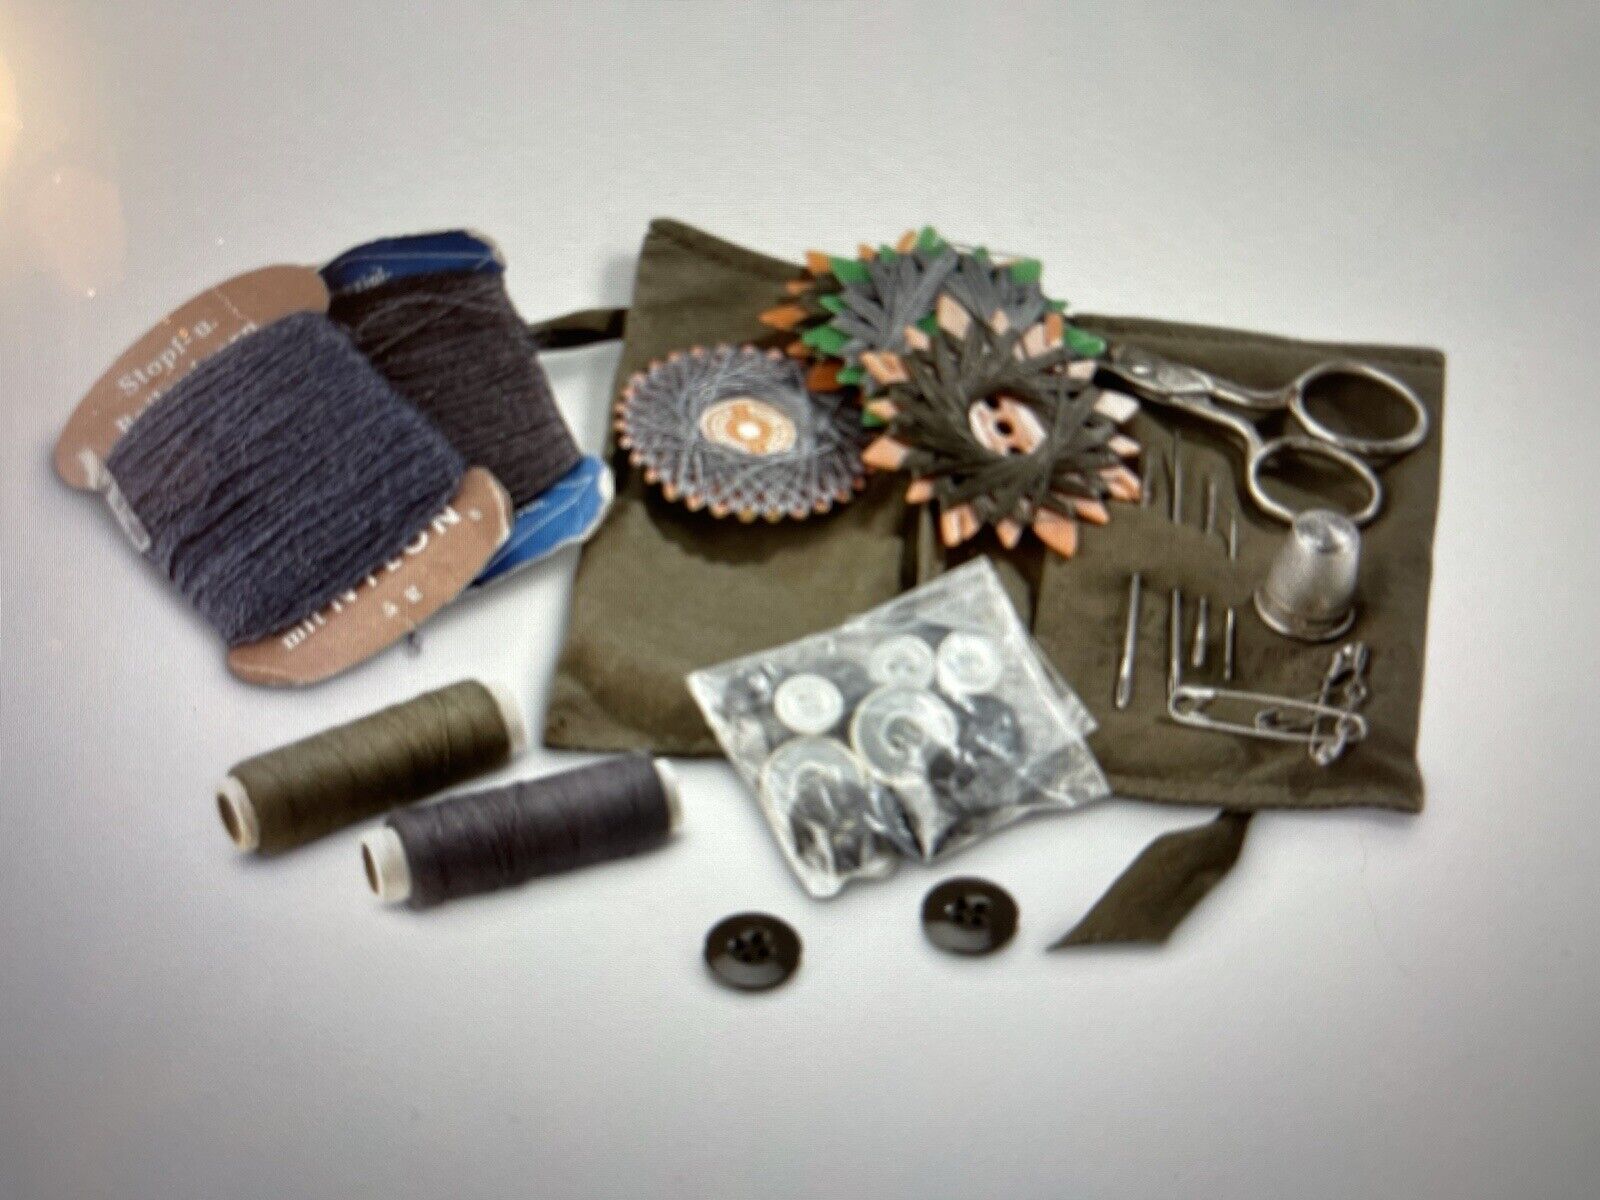 Original German Army Sewing Kit Bundeswehr Genuine Travel Field Prepper